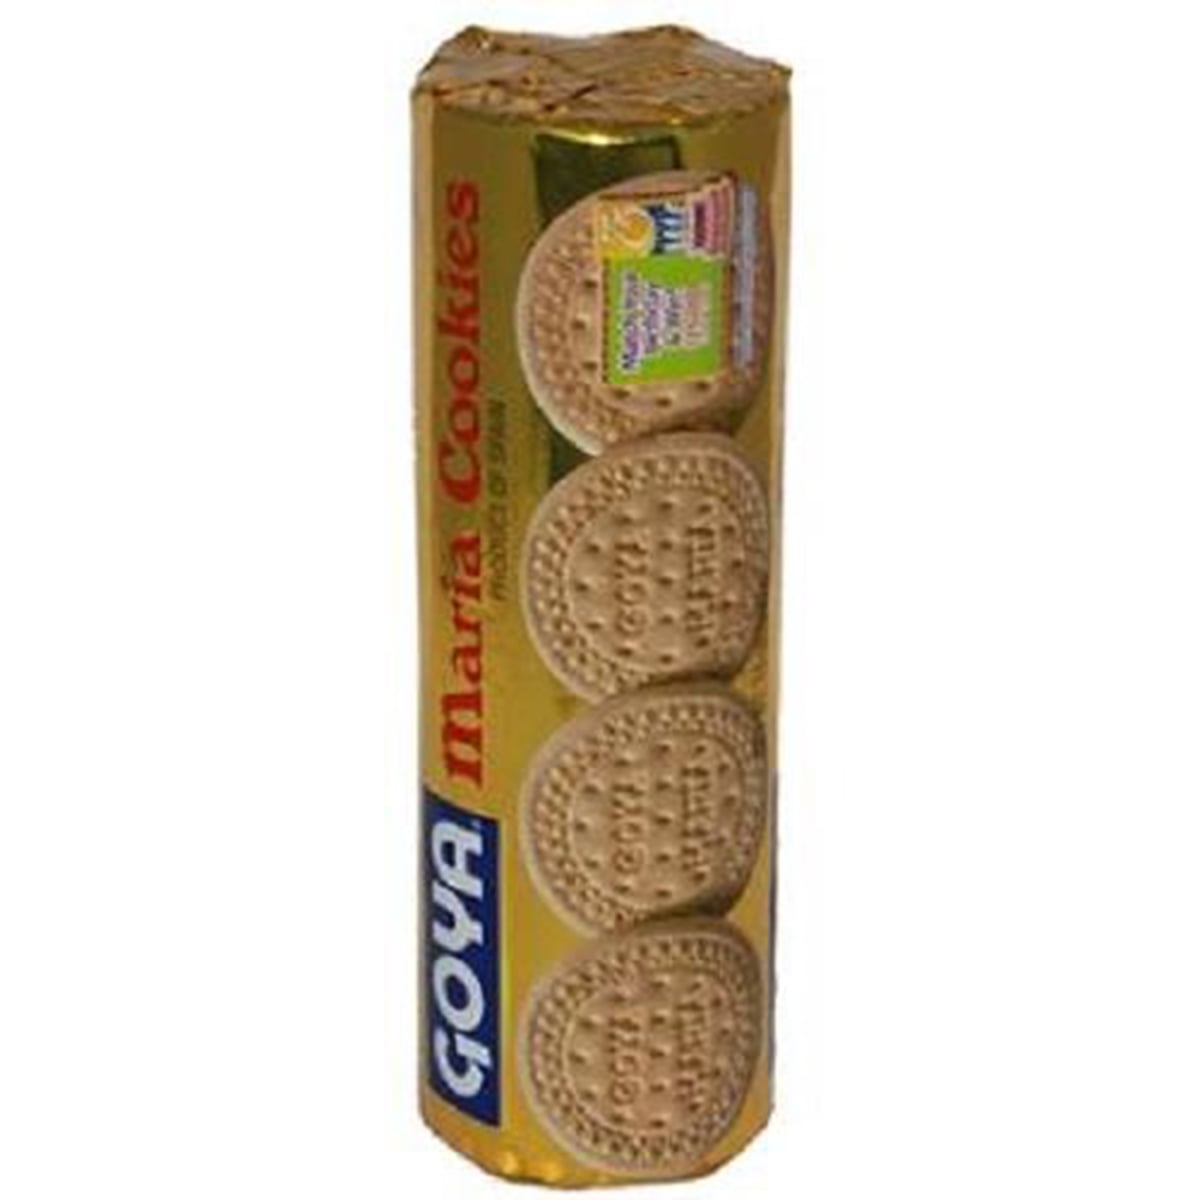 Goya, Maria Cookies, Count 1 - Cookie & Cracker / Grab Varieties ...